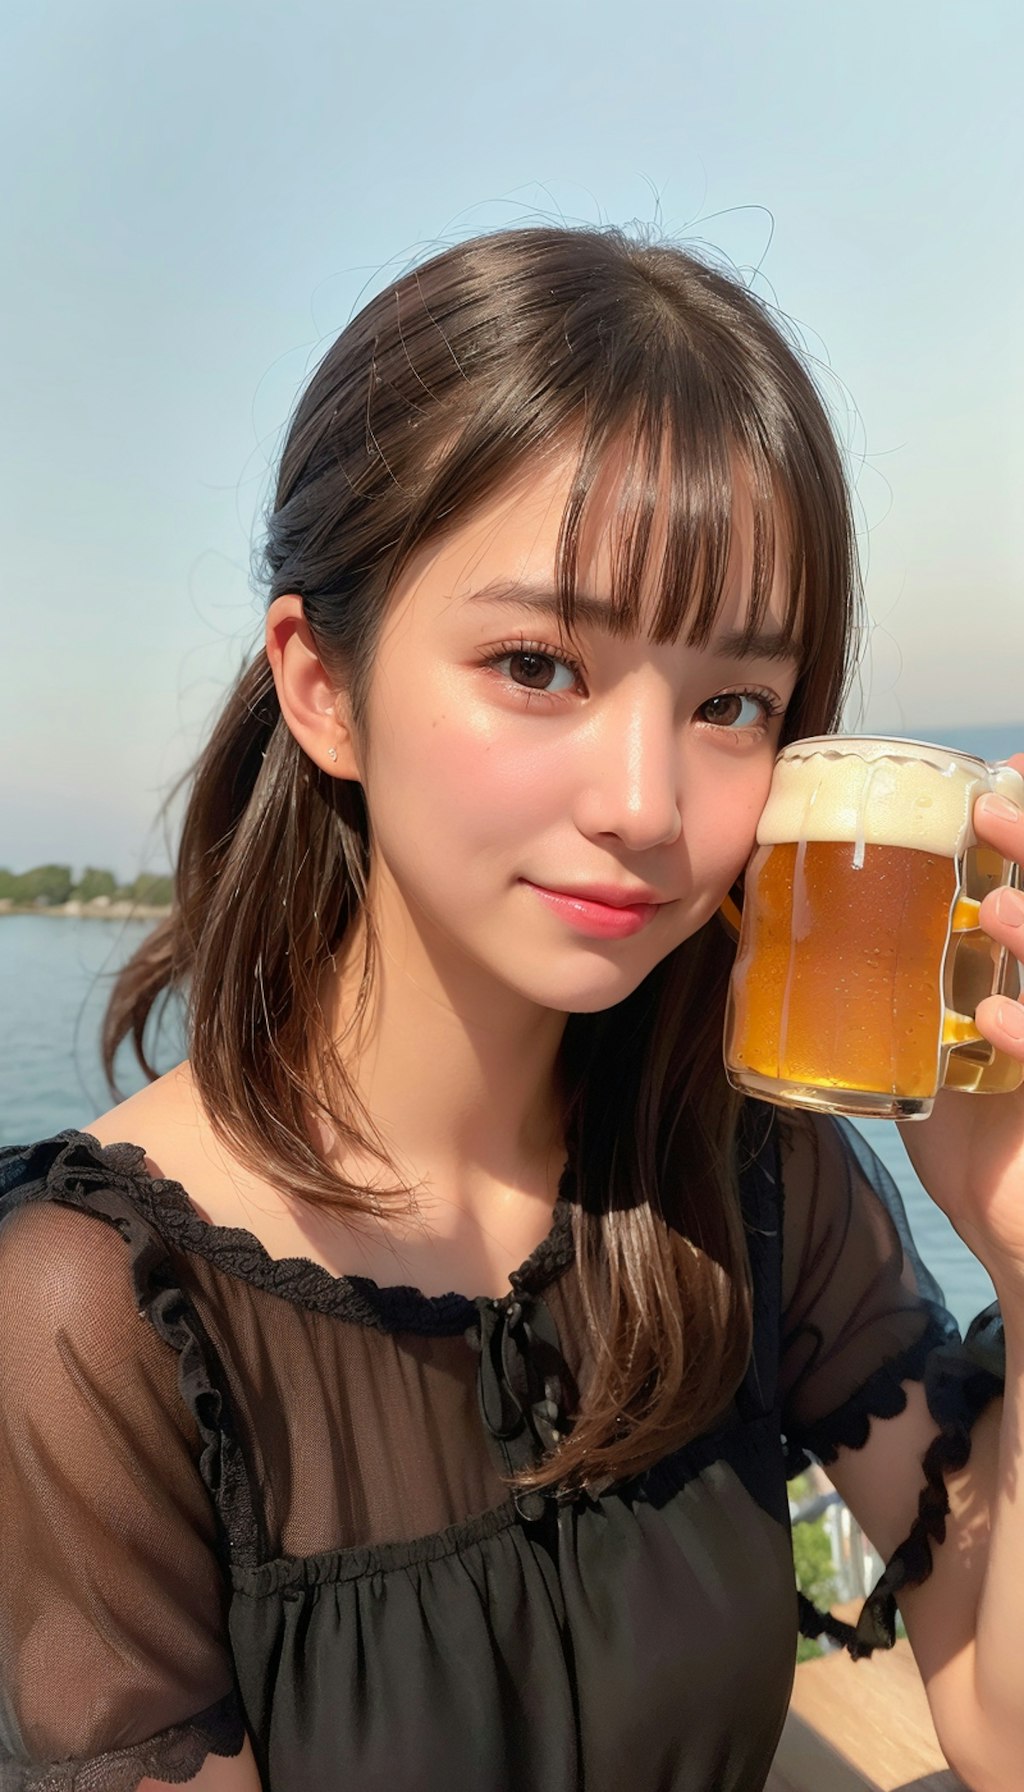 ビール47